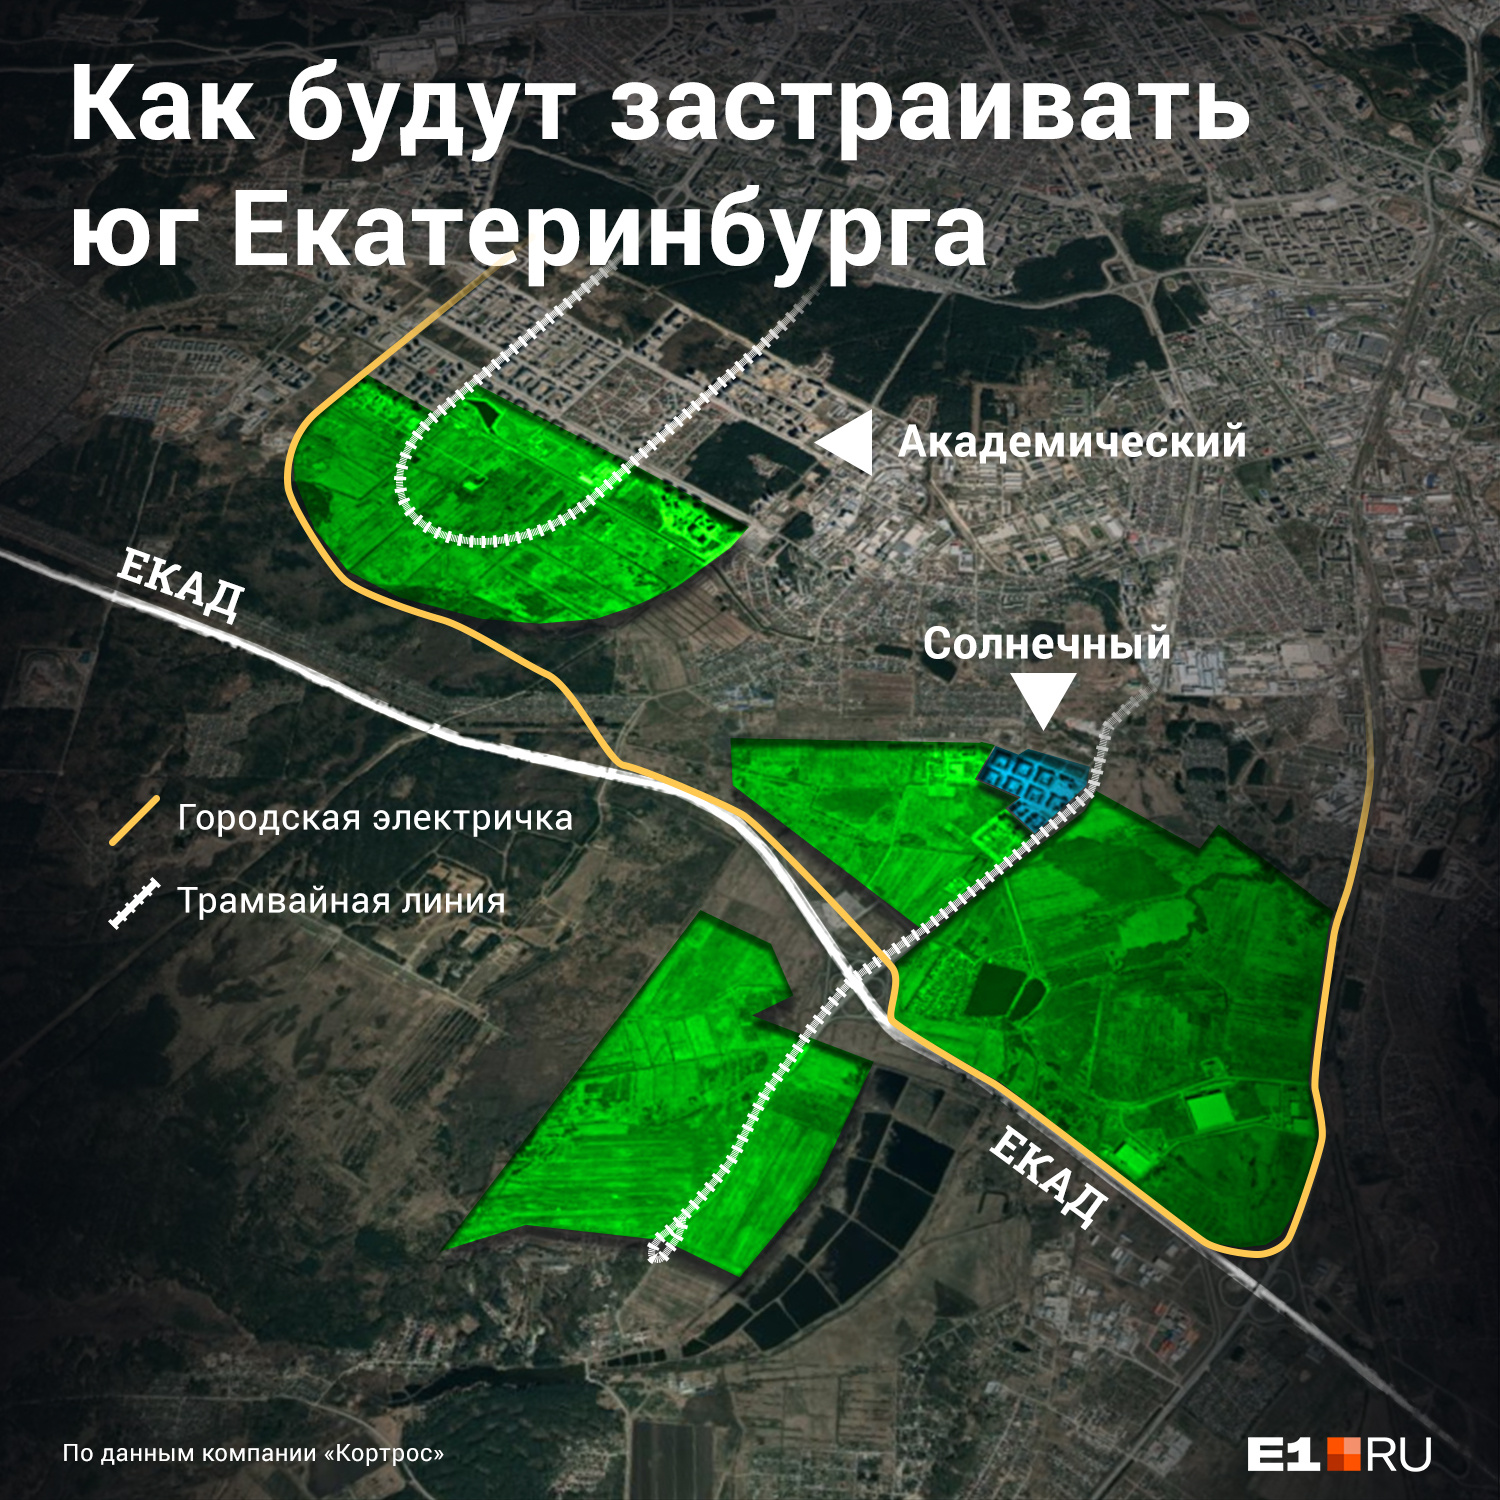 Зеленым цветом выделены районы, в которых планируется многоэтажная застройка